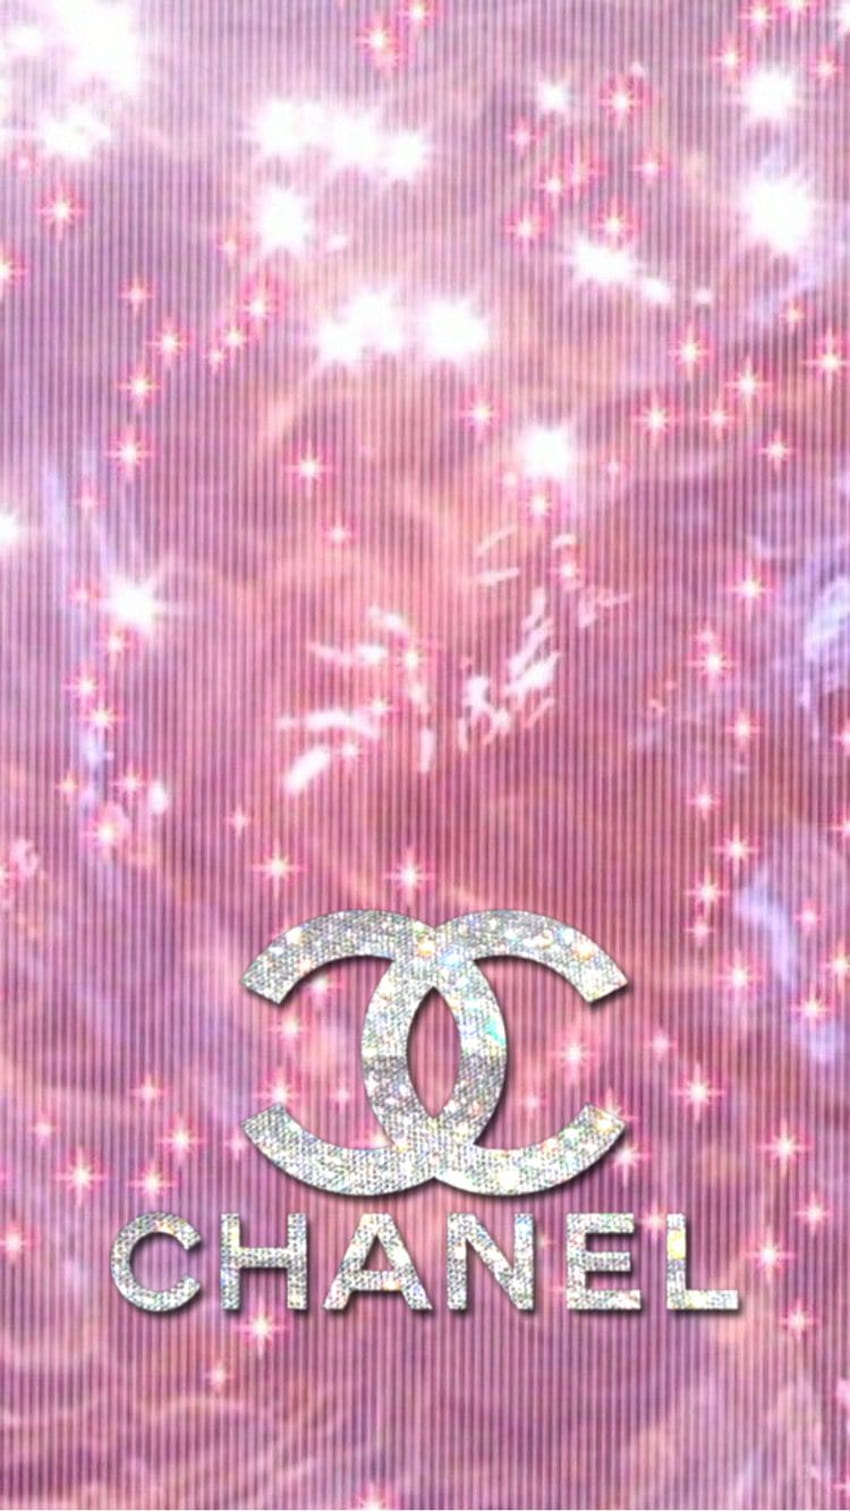 Fond ecran Louis vuitton violet rose  Louis vuitton iphone wallpaper, Louis  vuitton background, Chanel wallpapers